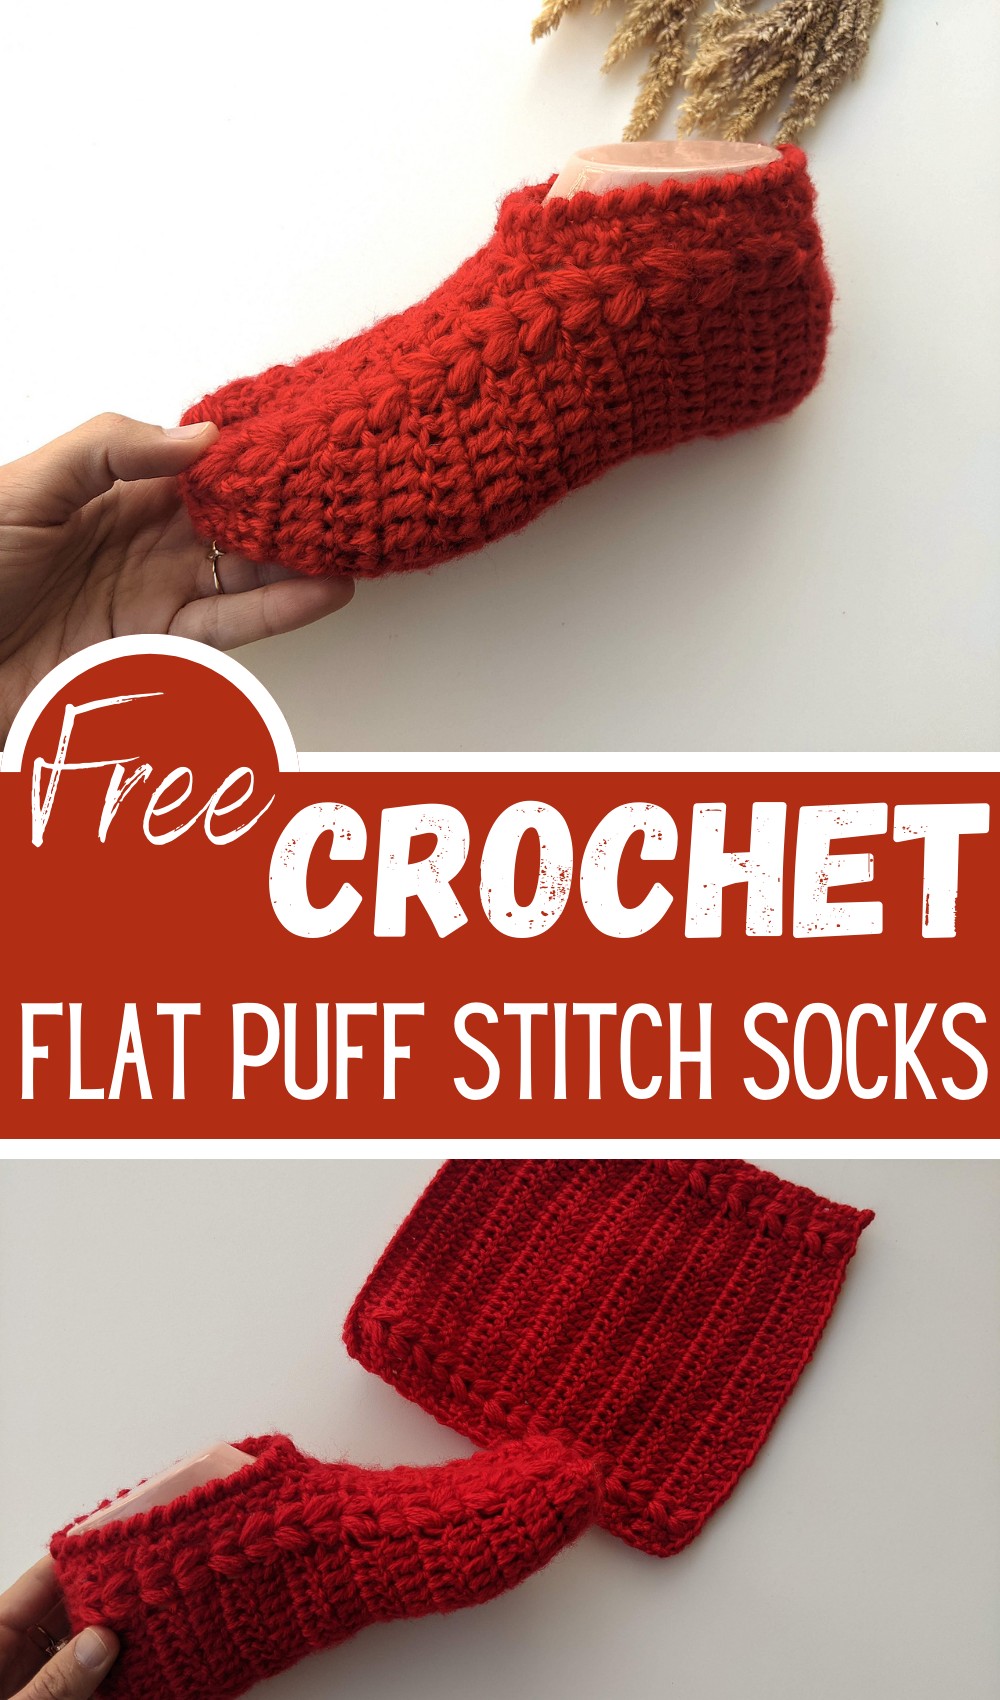 Flat Puff Stitch Socks